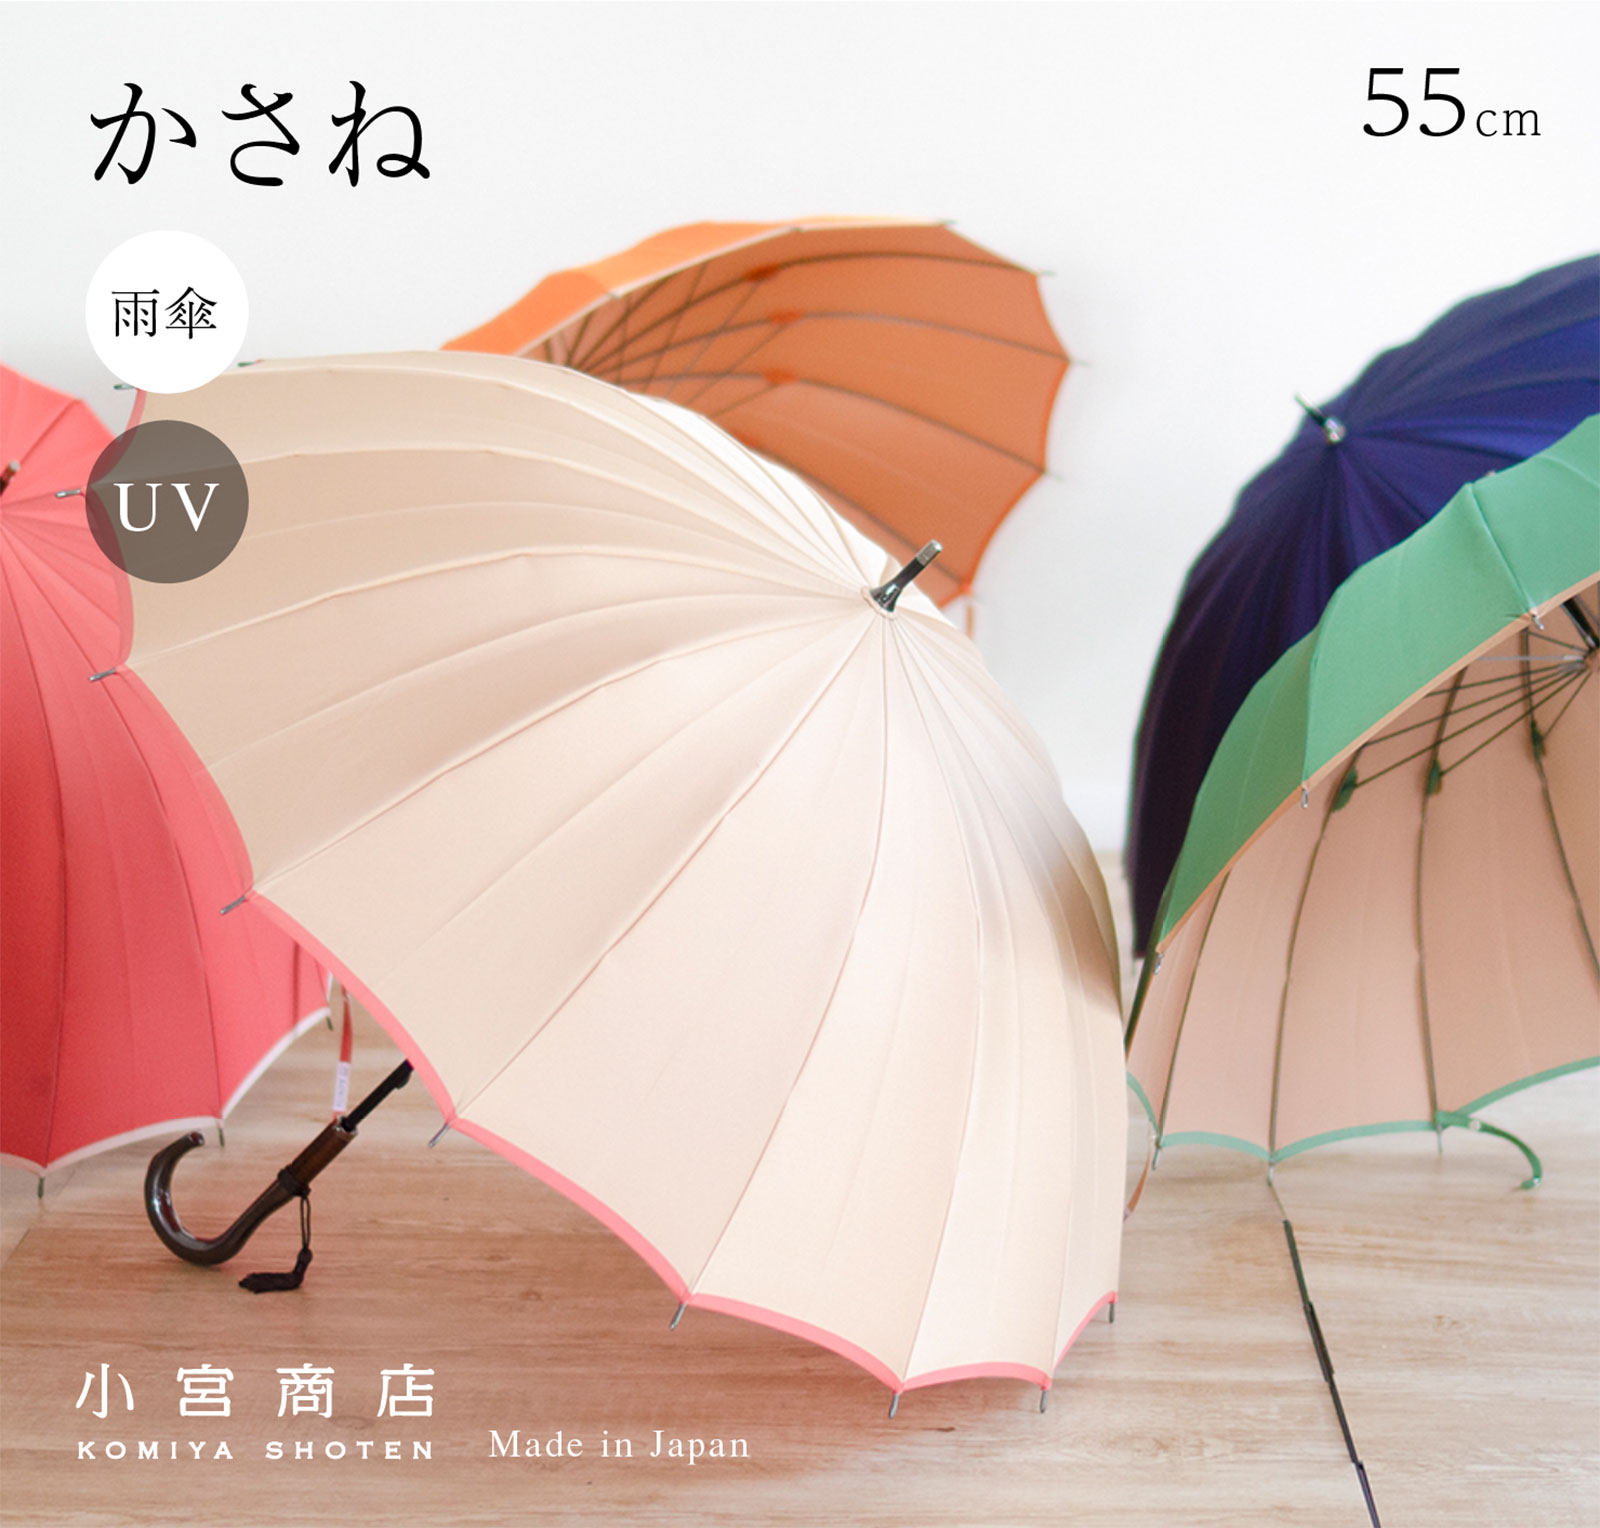 傘 レディース 16本骨 おしゃれ ブランド 長傘 かさ 軽い 雨傘 日傘 丈夫な傘 55cm 「甲州織 かさね」 日本製 軽量 丈夫 カーボン 耐風 風に強い 大人 可愛い かわいい シンプル UVカット 雨晴兼用 晴雨兼用 和風